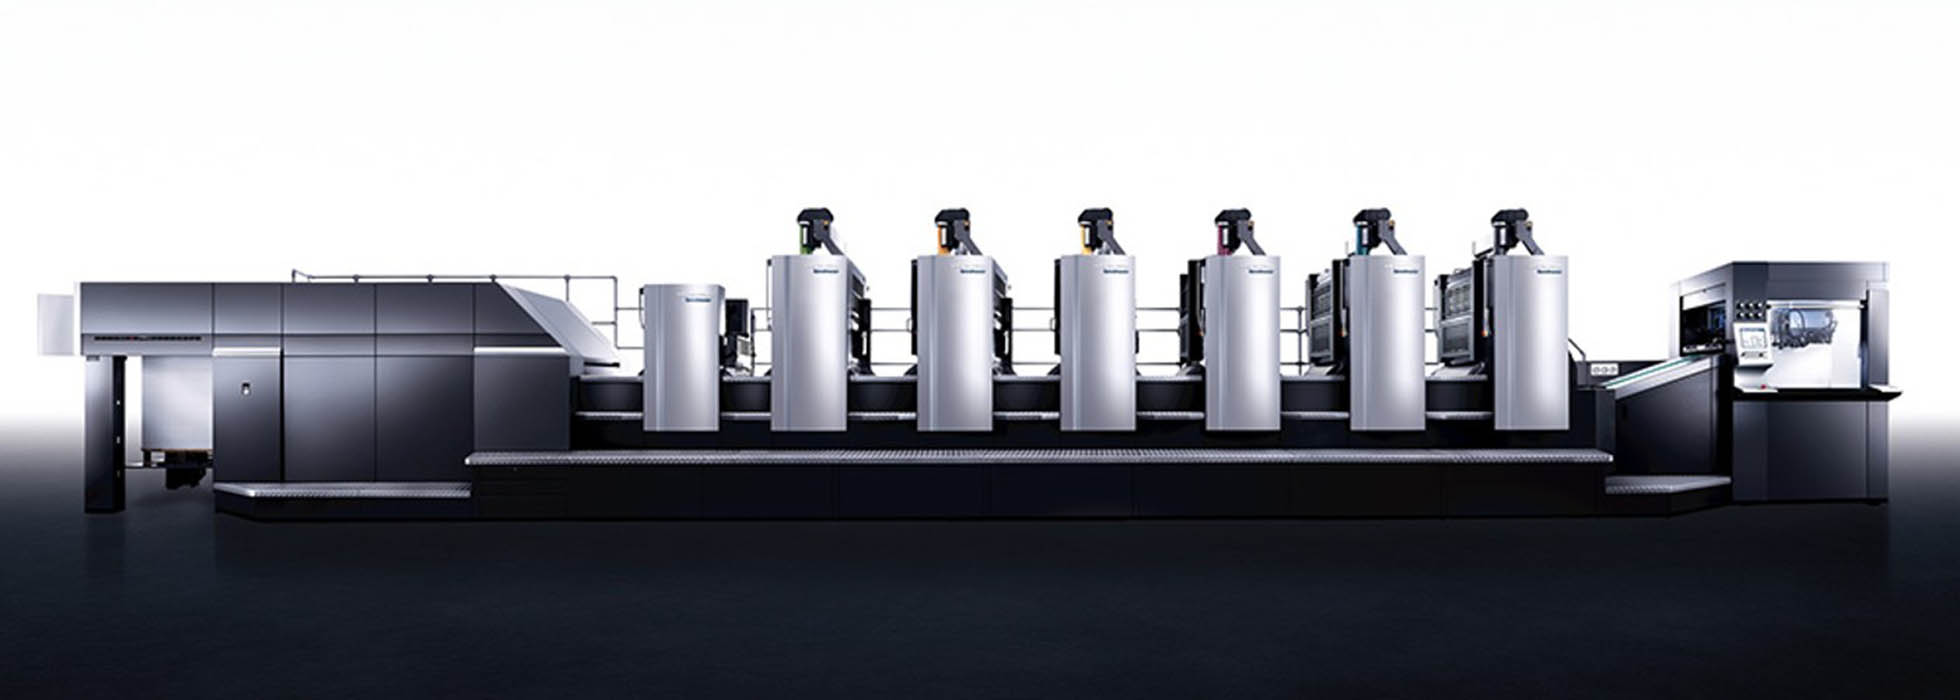 联盛集团引进世界先进大幅面印刷设备海德堡速霸XL162-6+L 